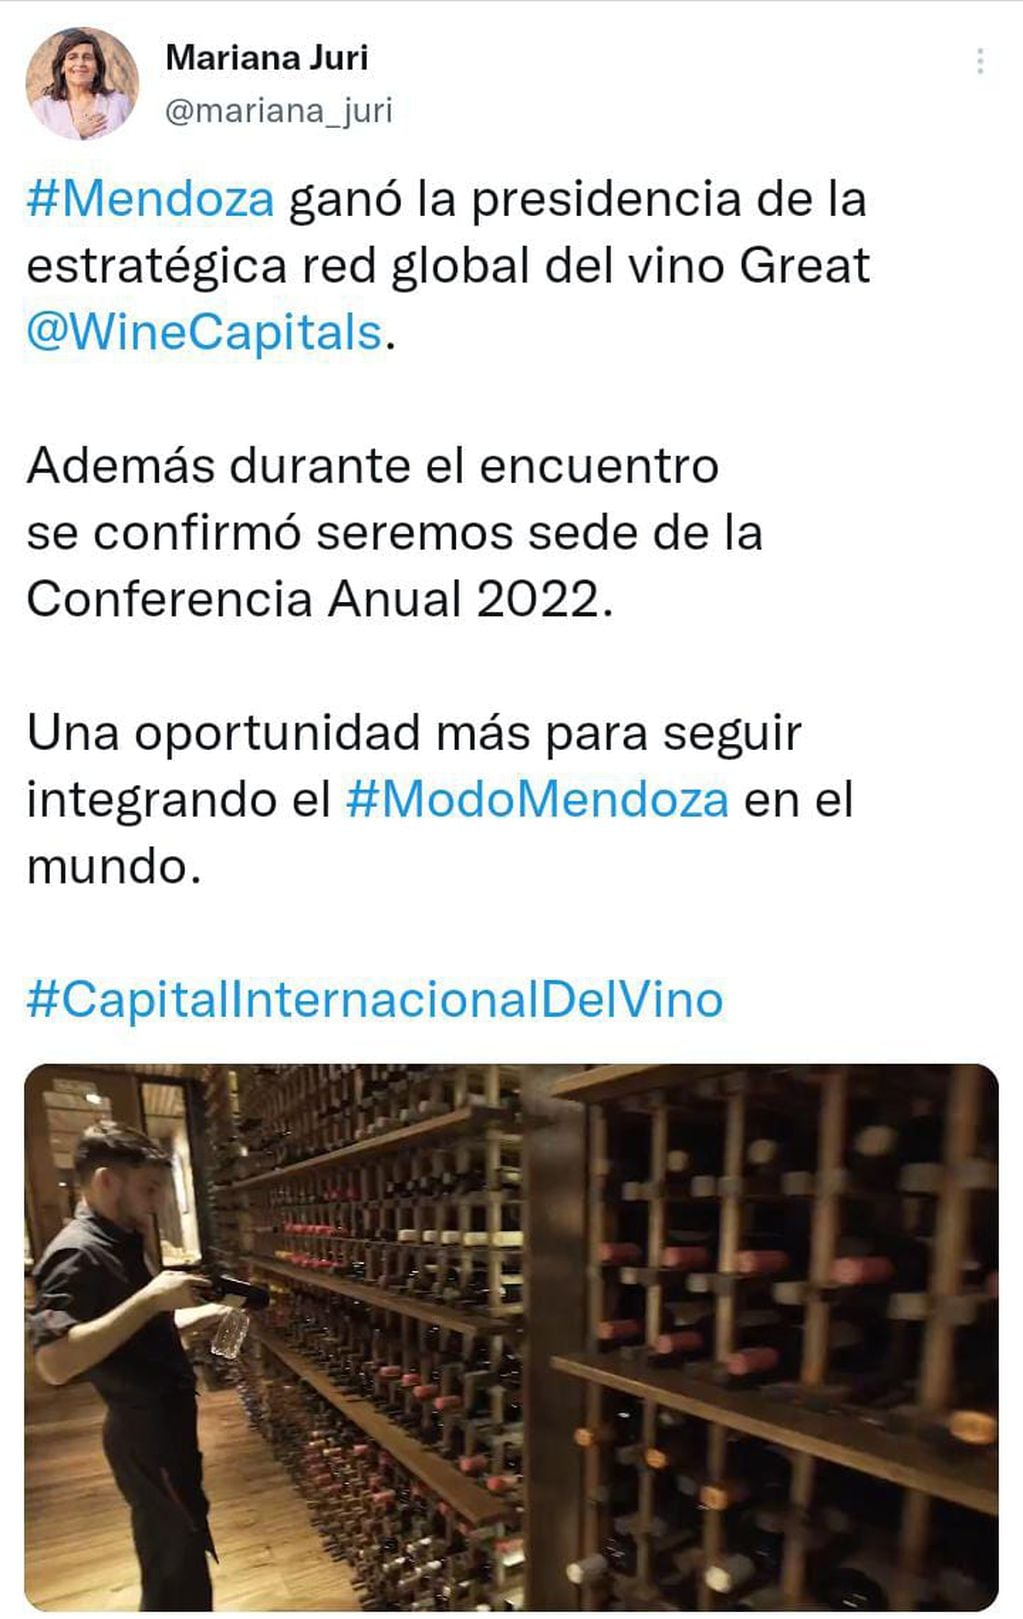 Publicación de la Ministra de Cultura y Turismo de Mendoza en su cuenta de Twitter.